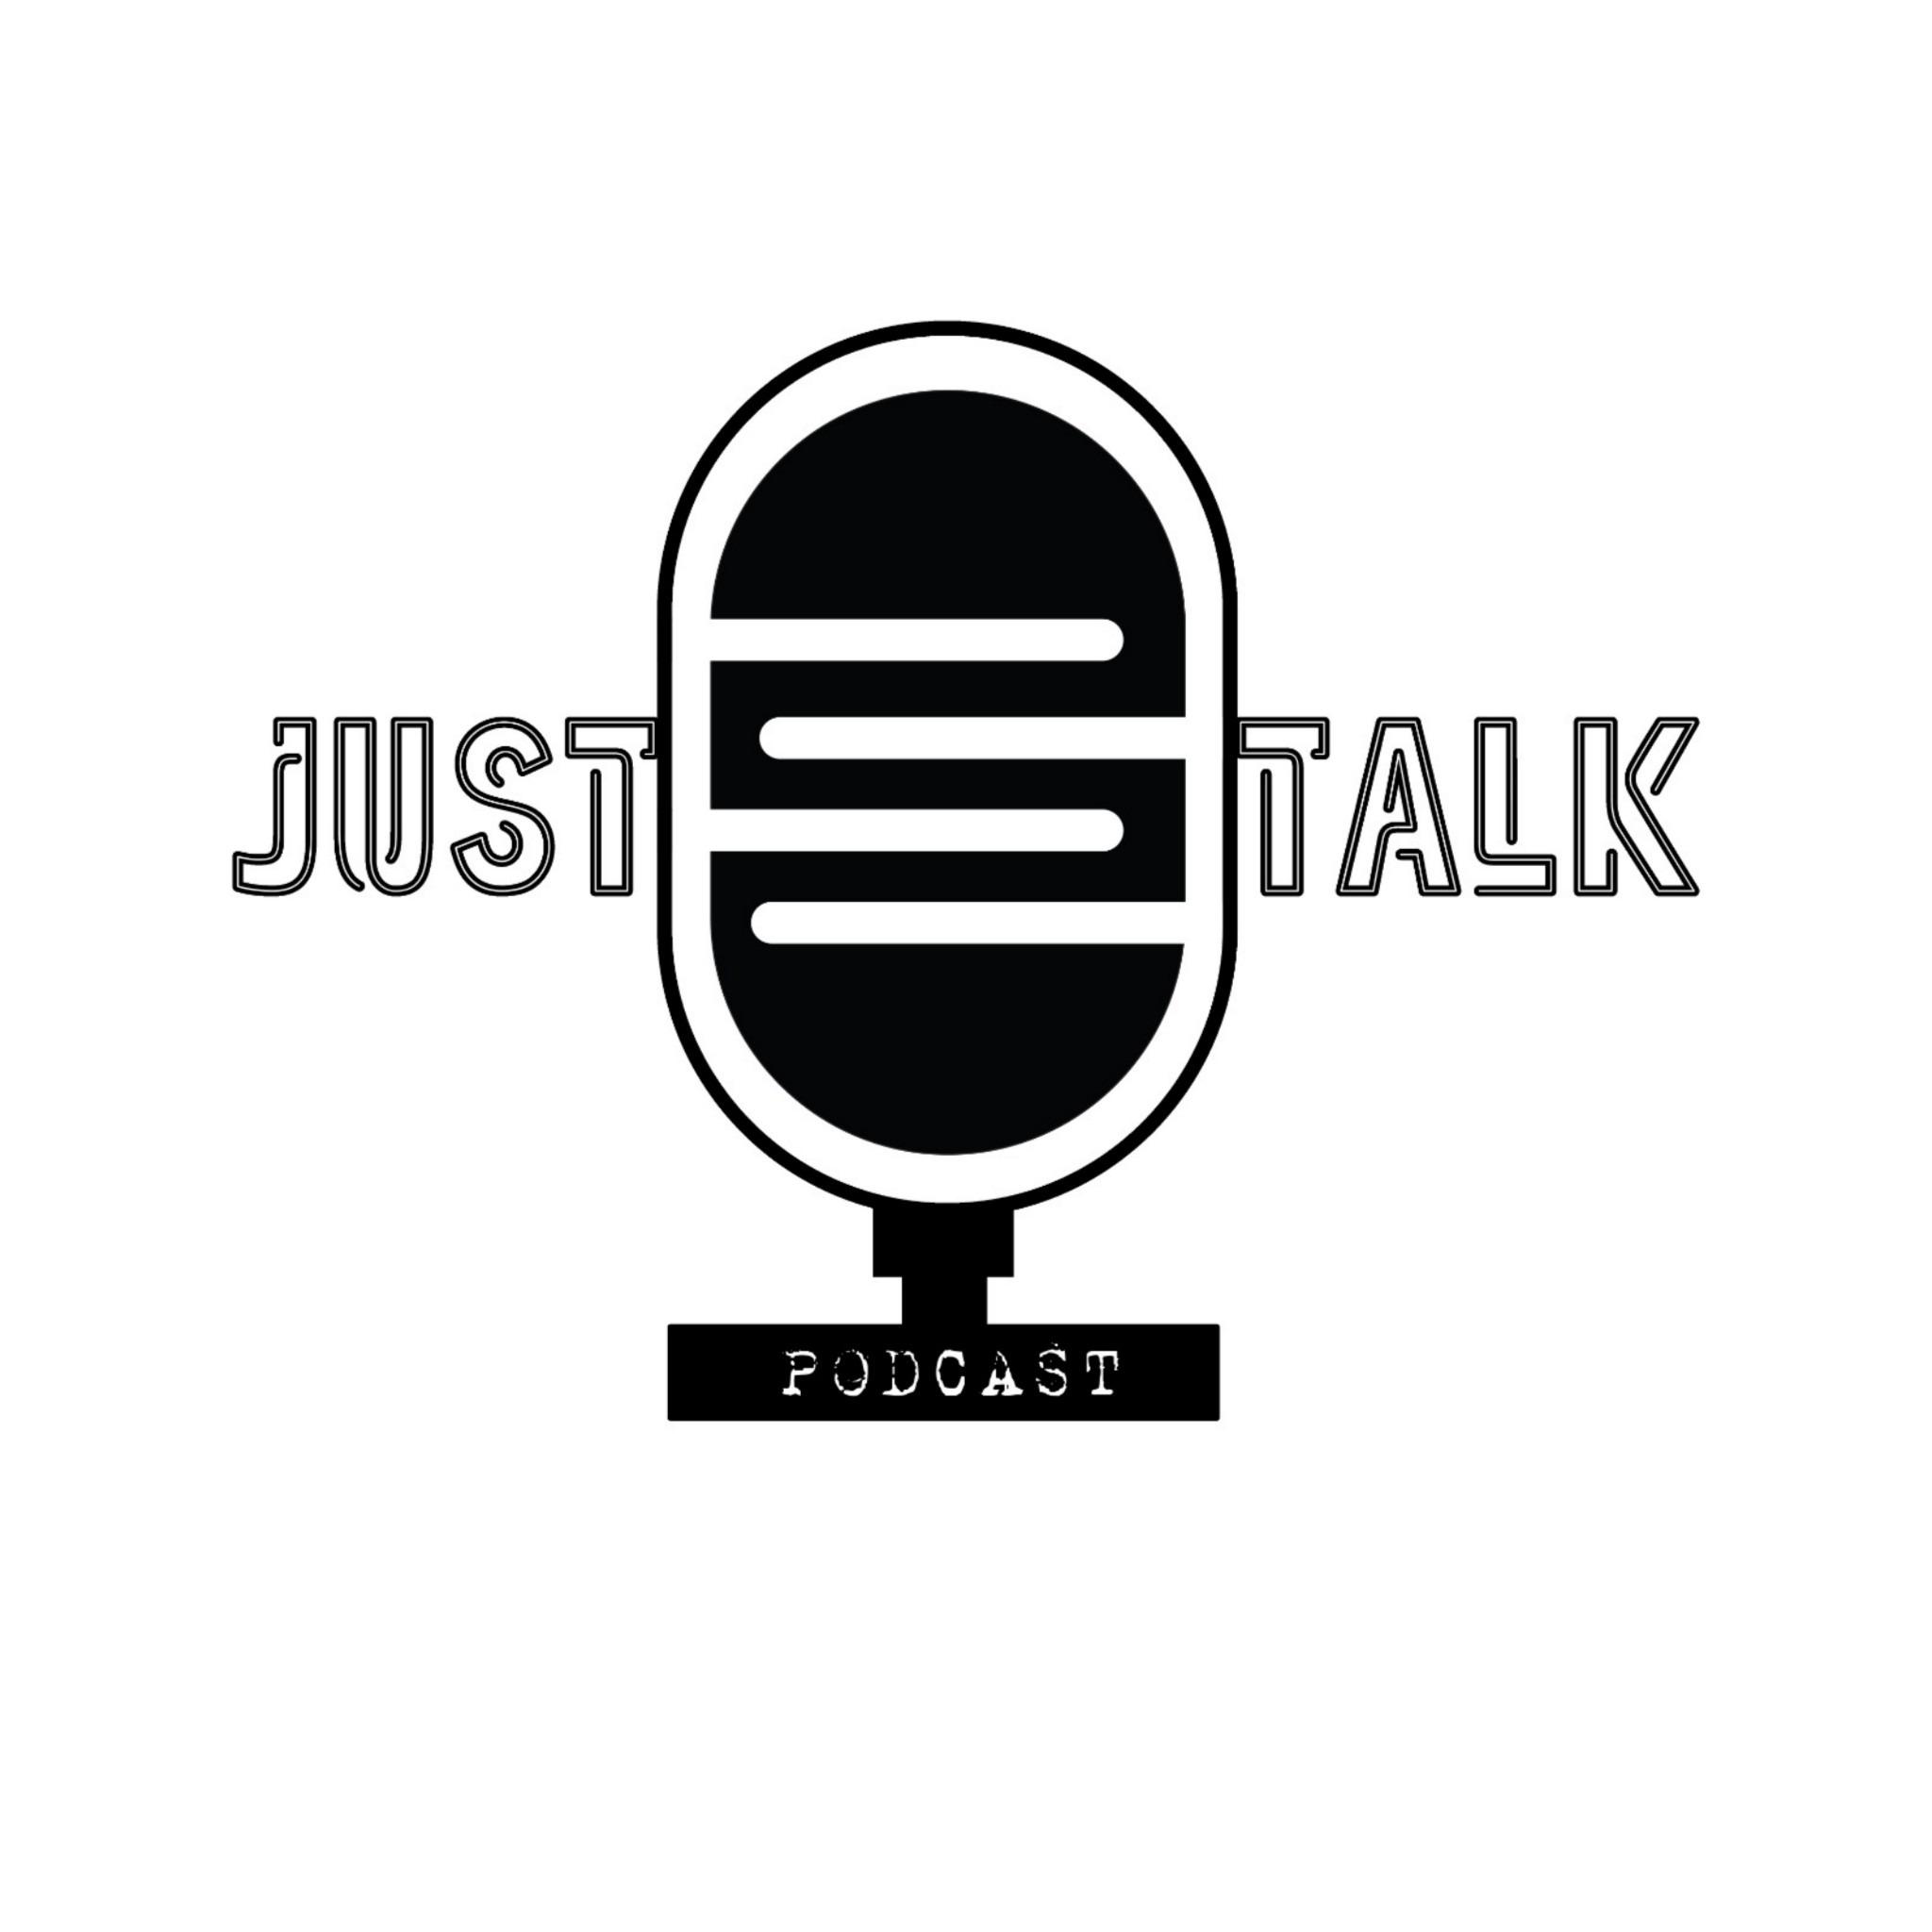 Justtalk podcast